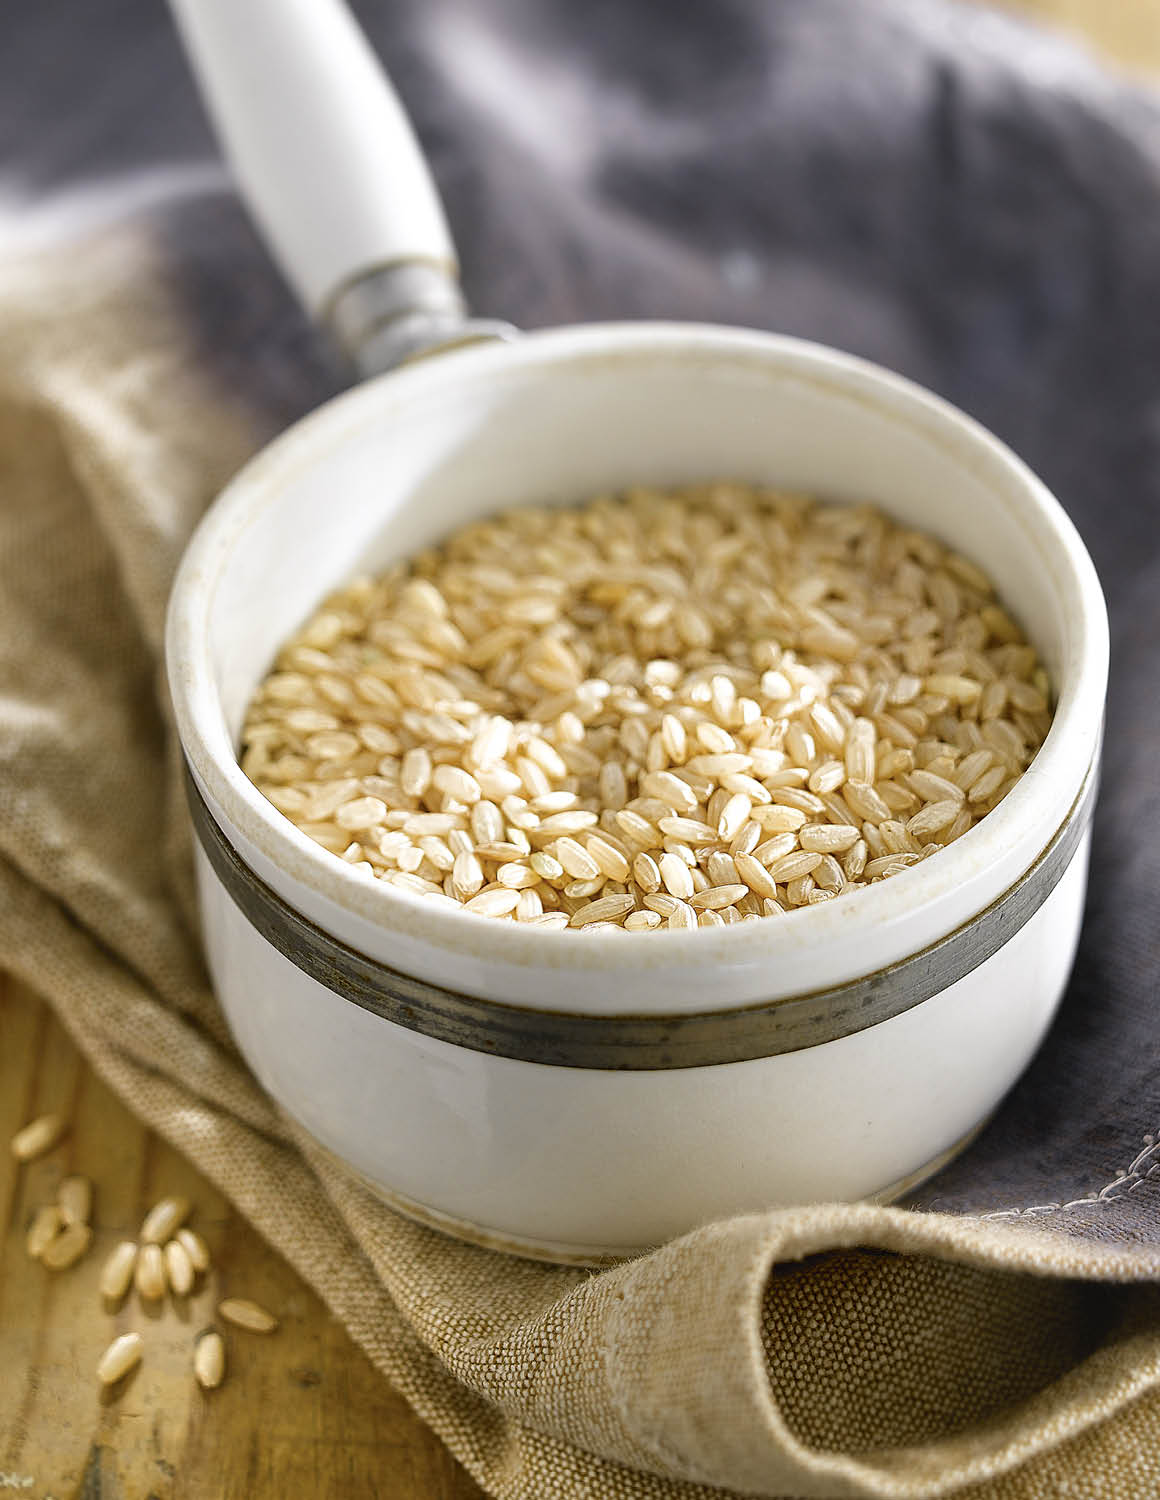 arroz integral 3c283bd0 - 20 aliments rassasiants qui vous aideront à perdre du poids